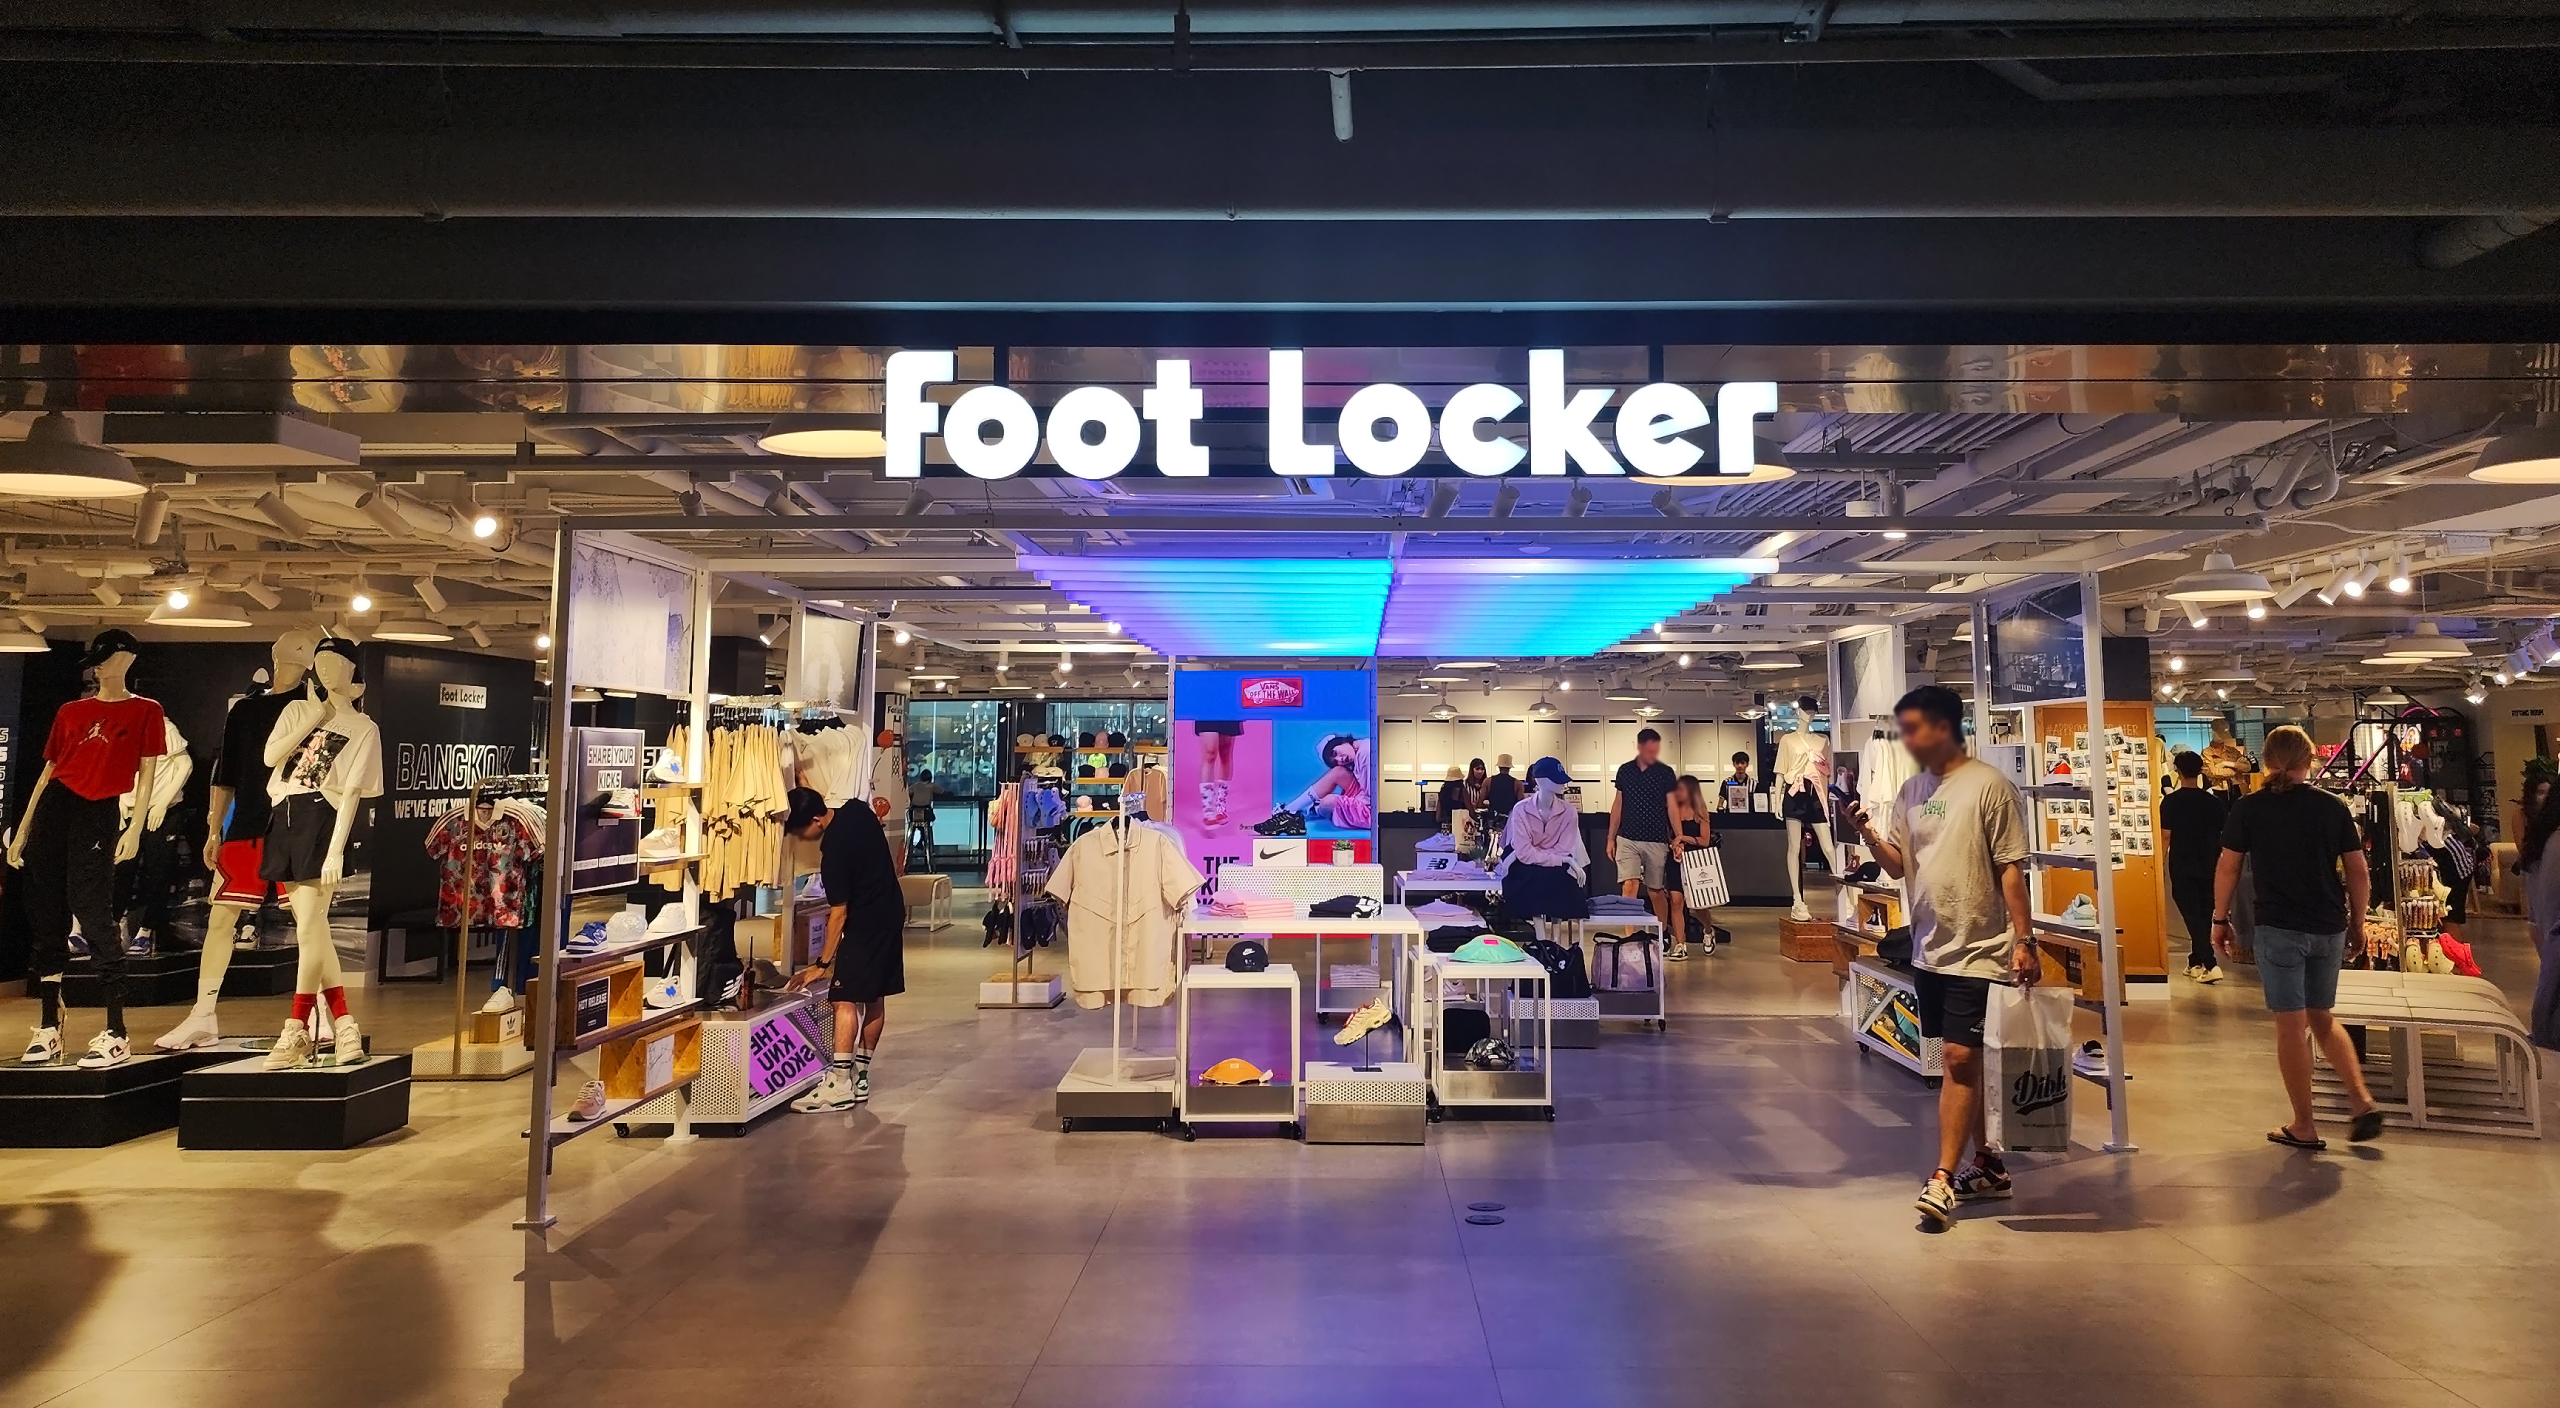 นี่มันคลังแสงของคนรักสนีกเกอร์! พาชม Foot Locker Thailand ร้านสปอร์ตแบรนด์ชื่อดังจากสหรัฐฯ เปิดสาขาแรกในไทยแล้ว ที่ Siam Center